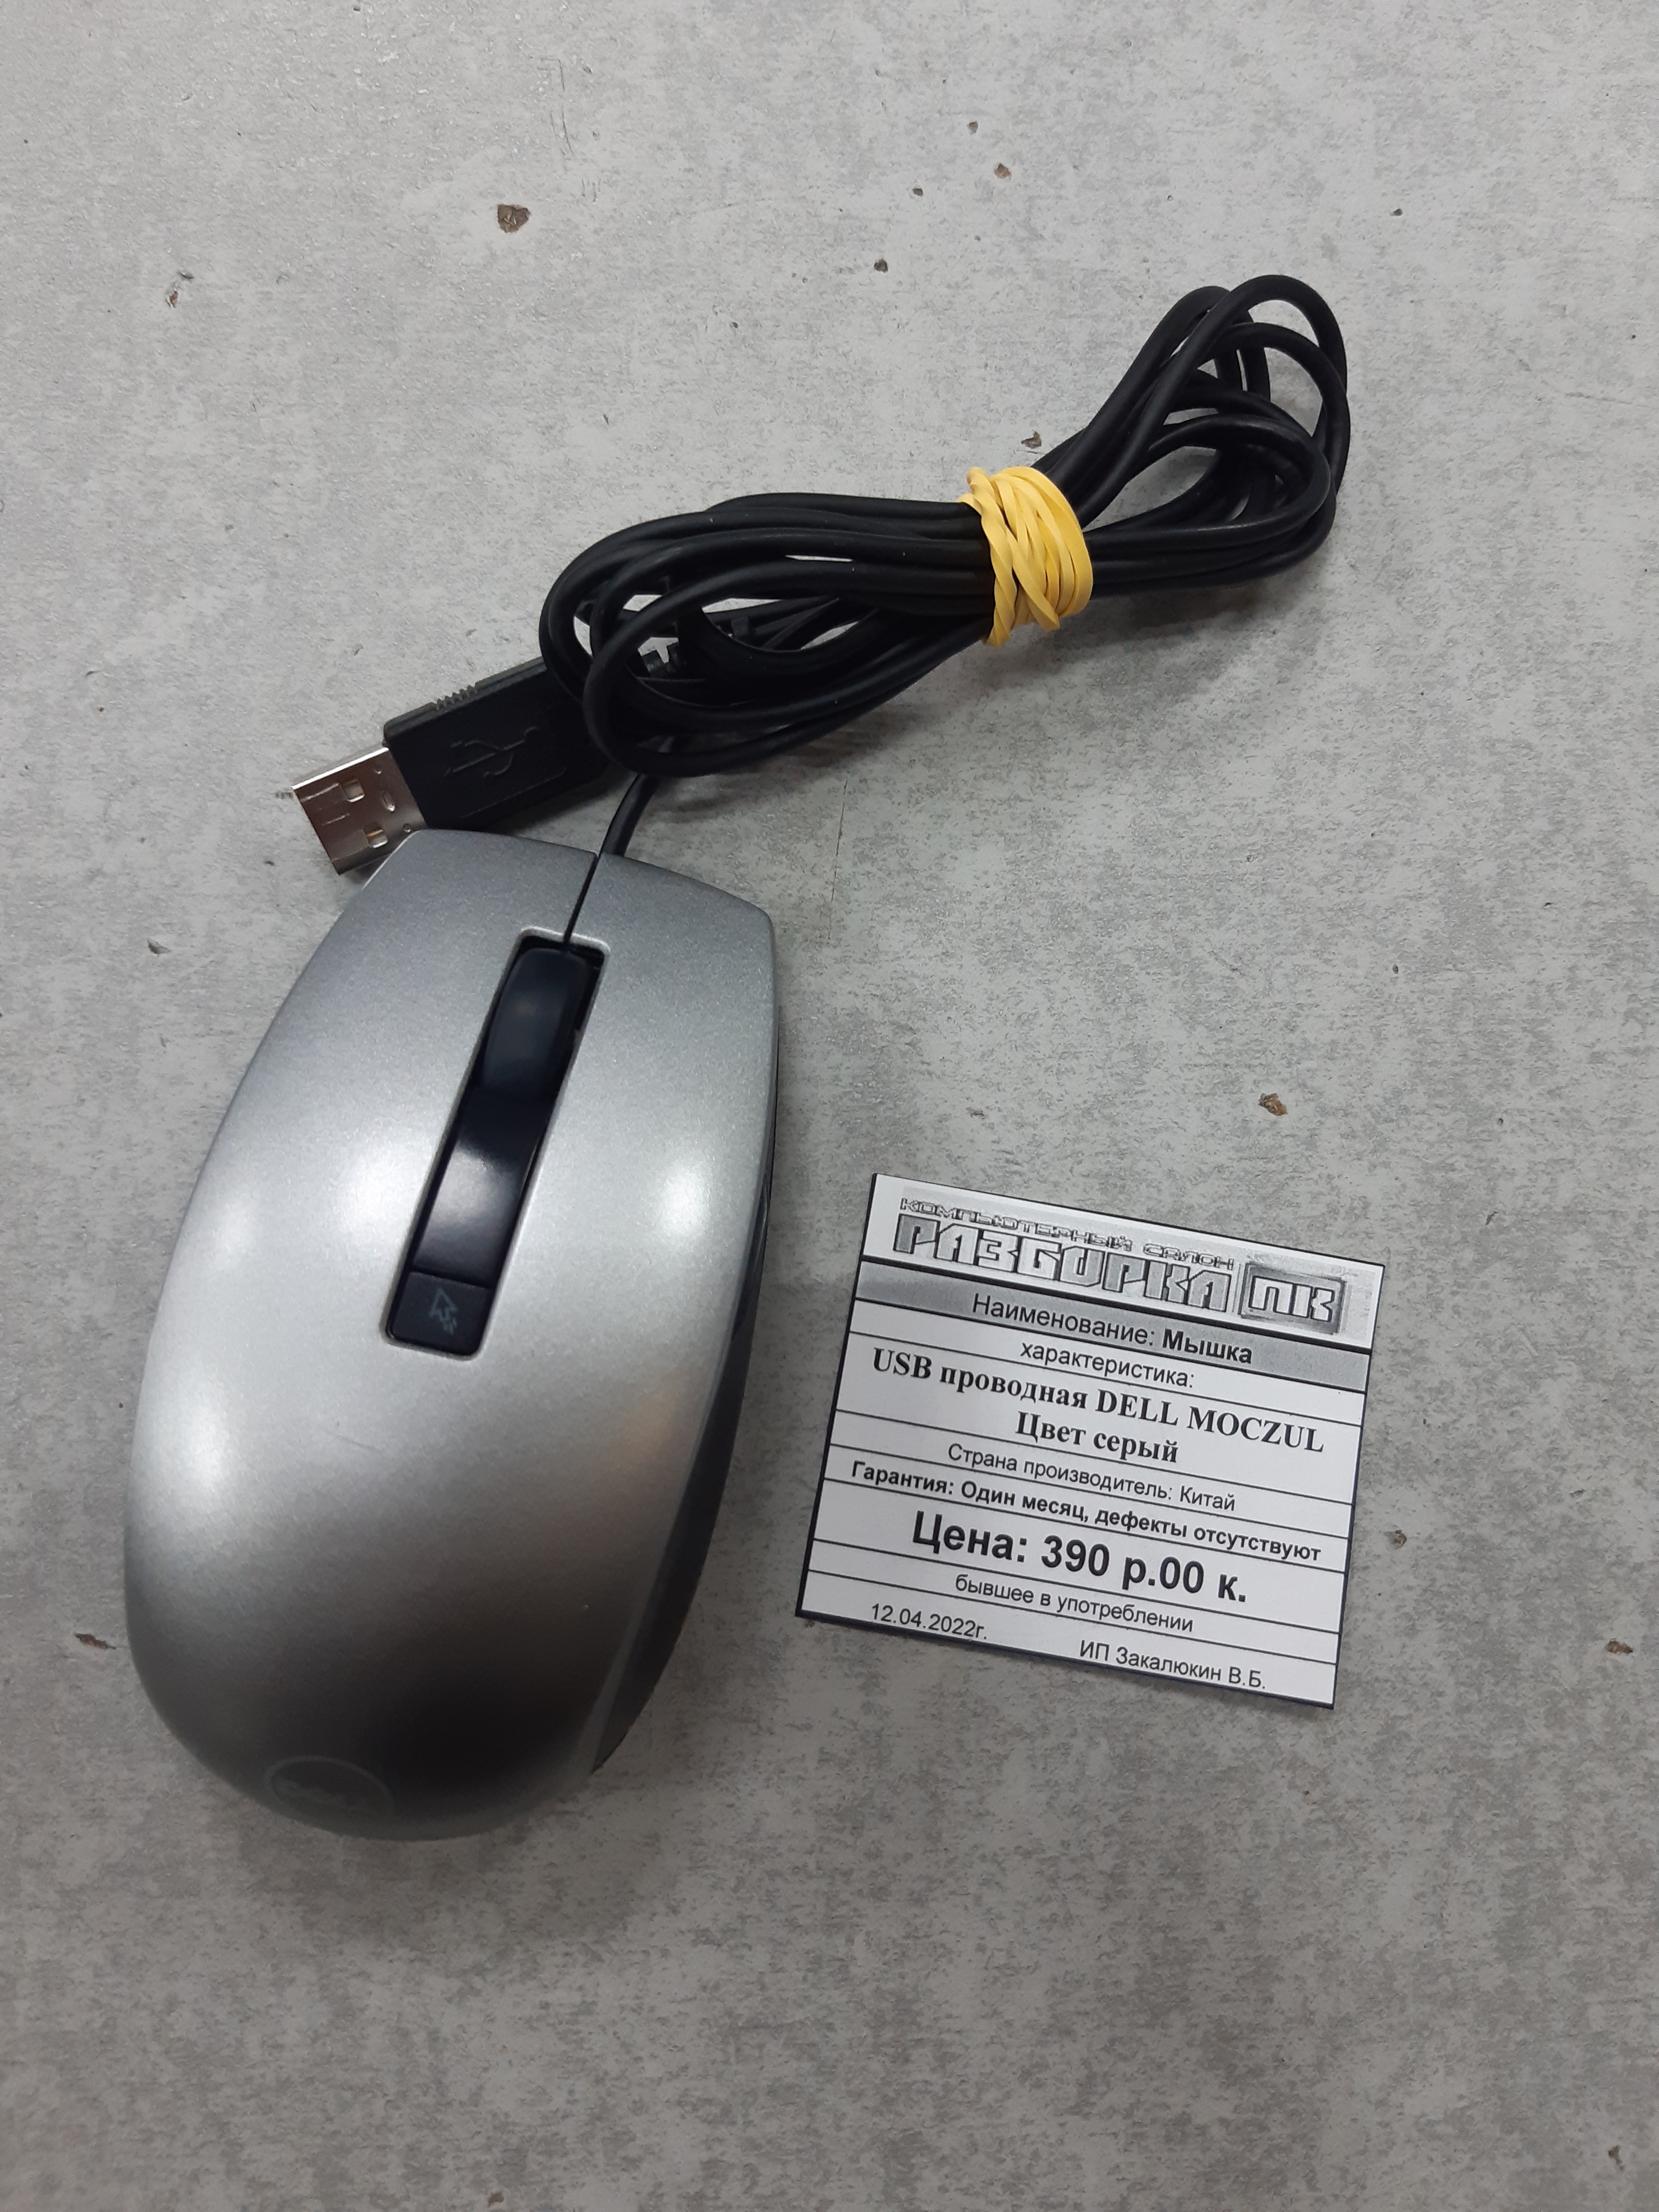 Мышка USB проводная DELL MOCZUL